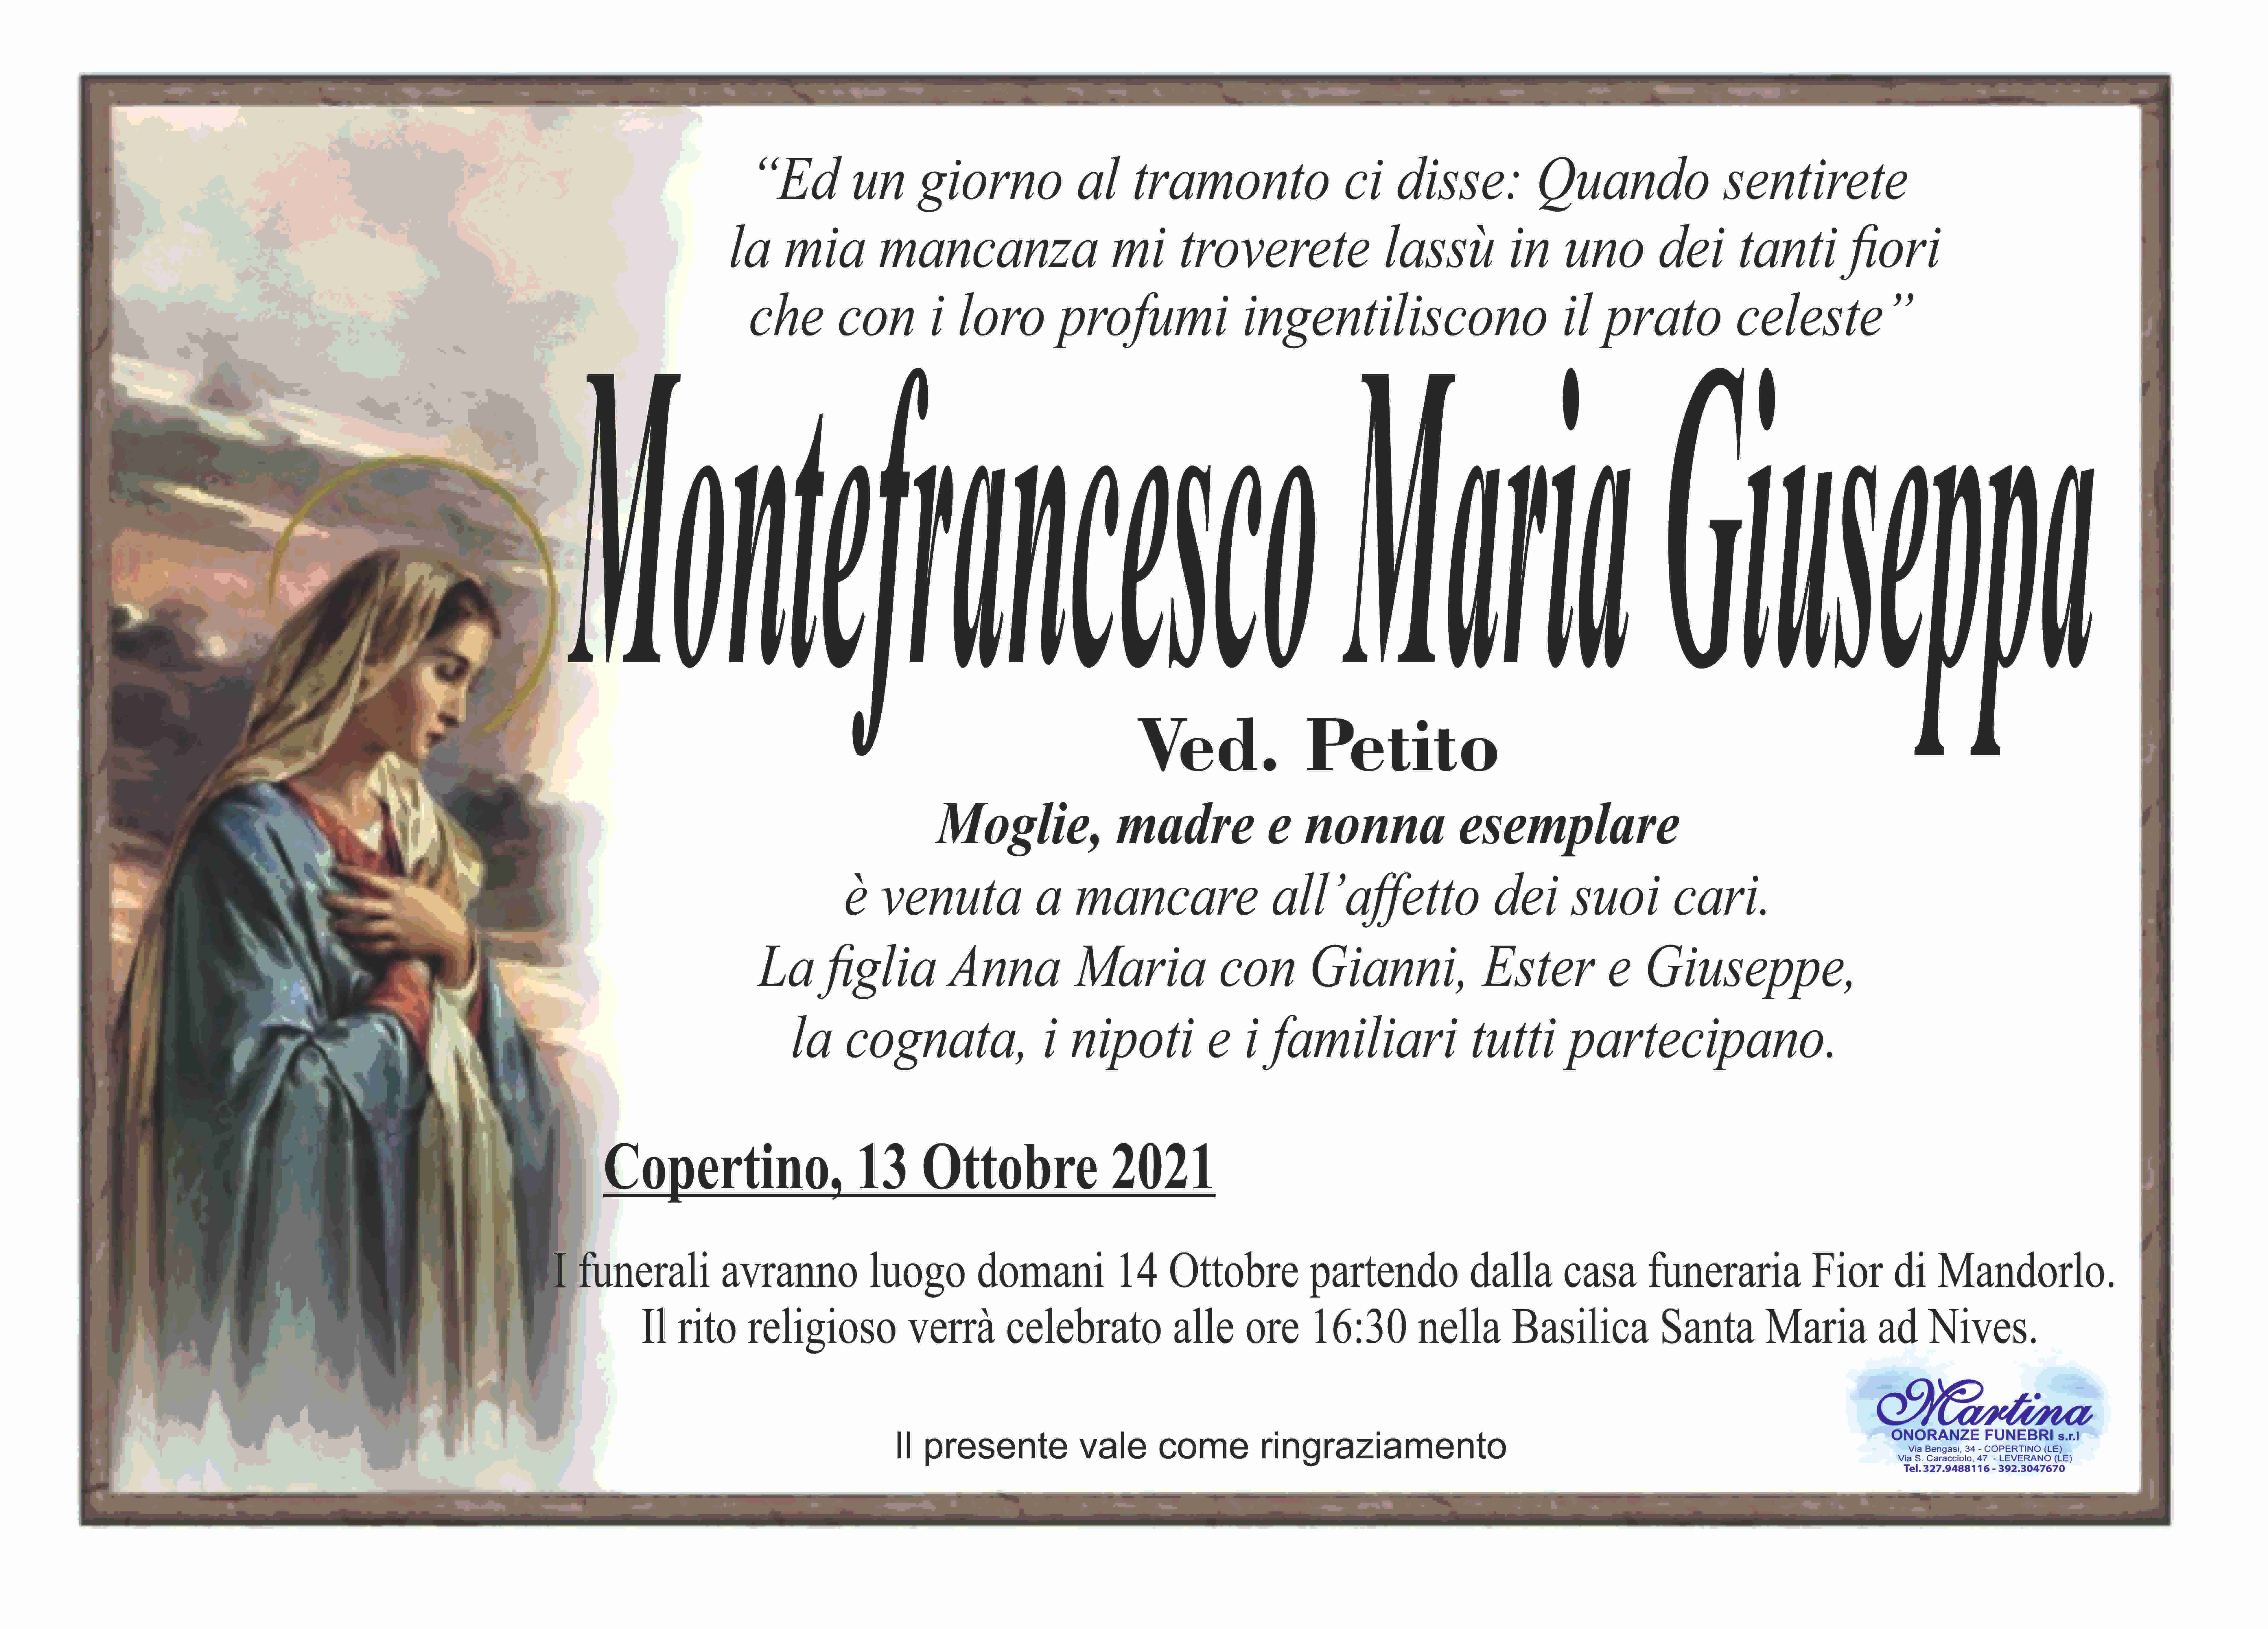 Maria Giuseppa Montefrancesco